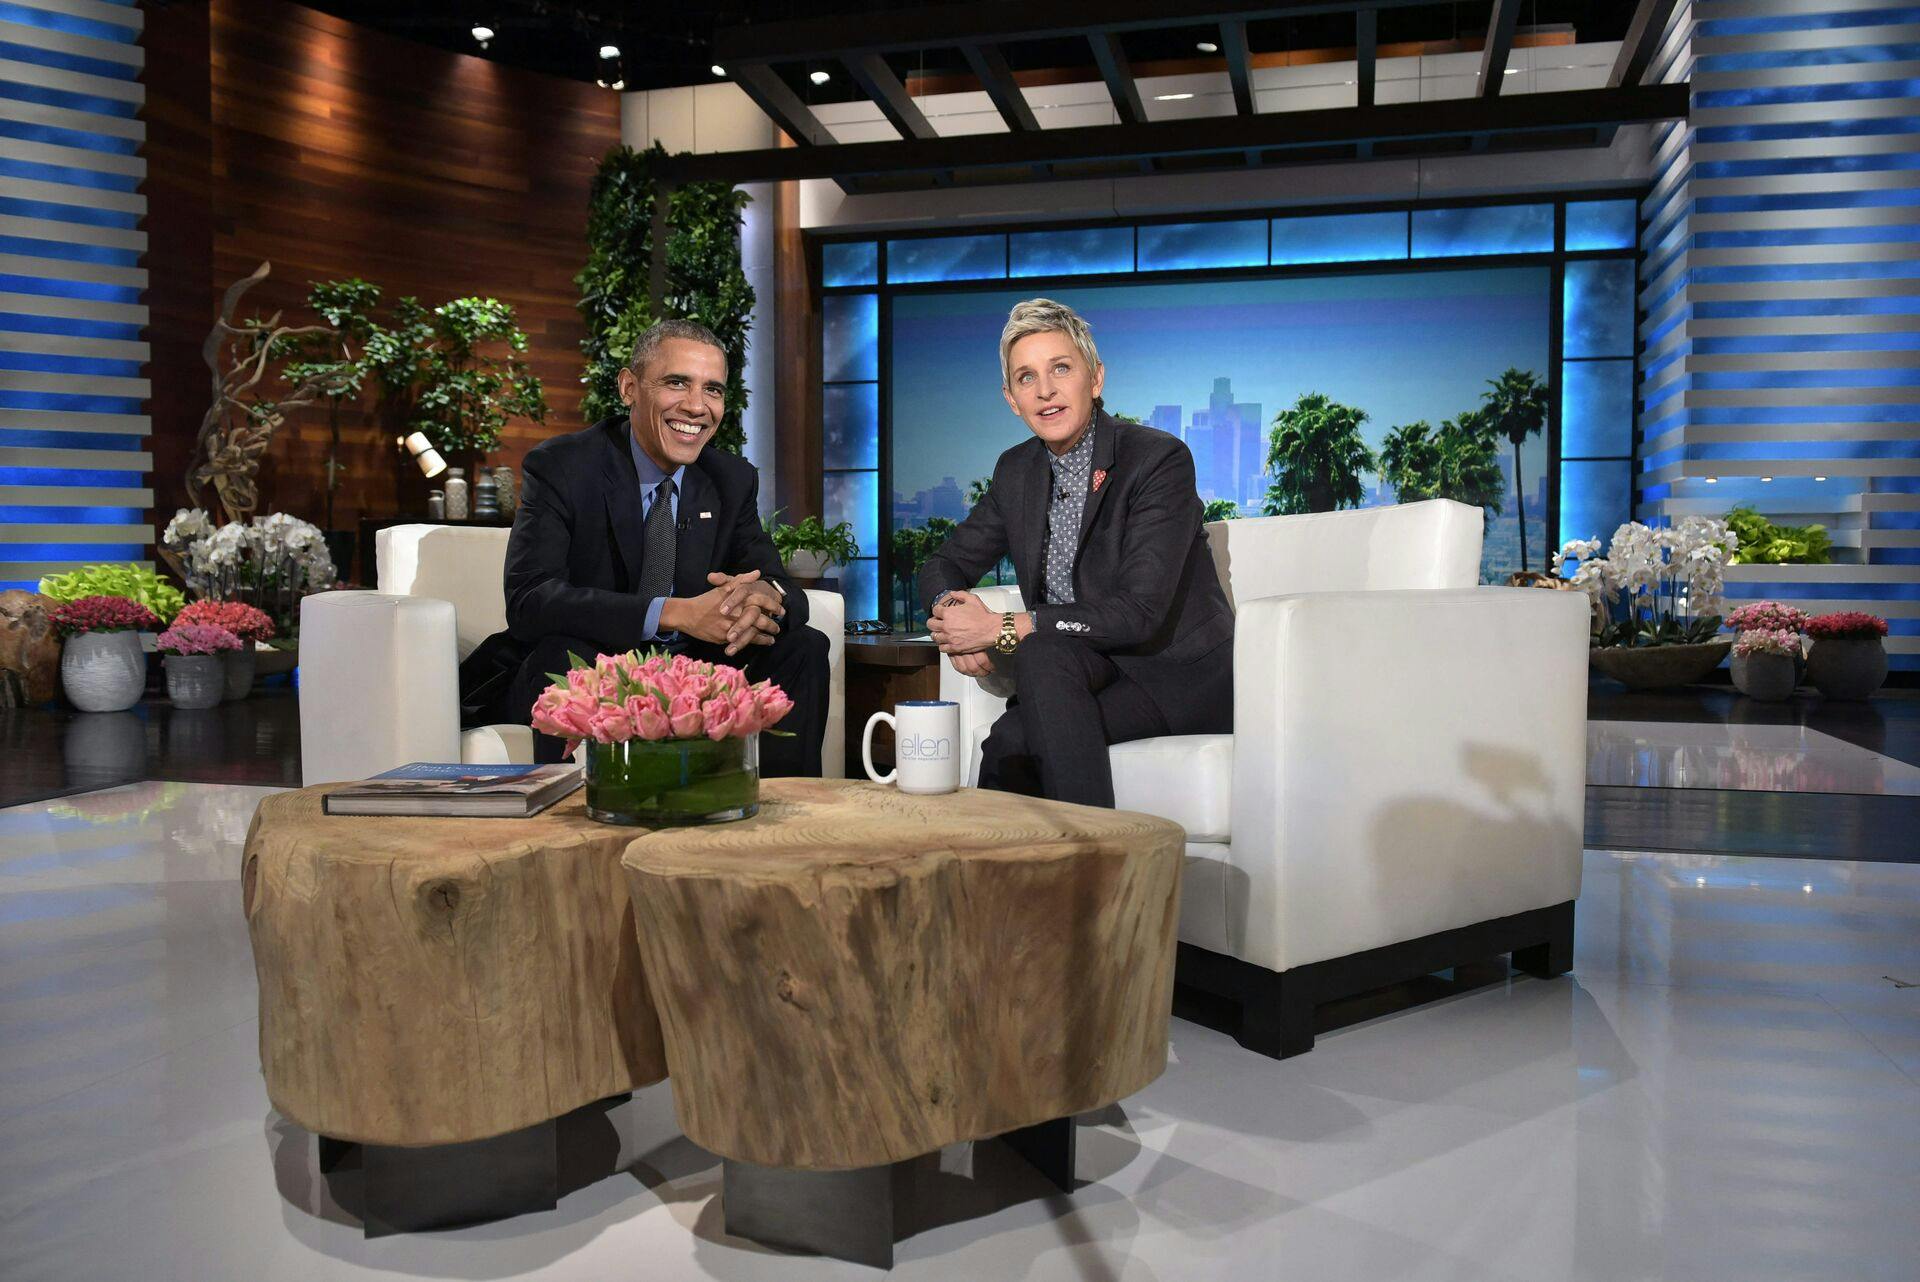 Ellen DeGeneres havde en perlerække af gæster i sit show, der stoppede efter 19 sæsoner. Nu får hun chancen på skærmen igen.